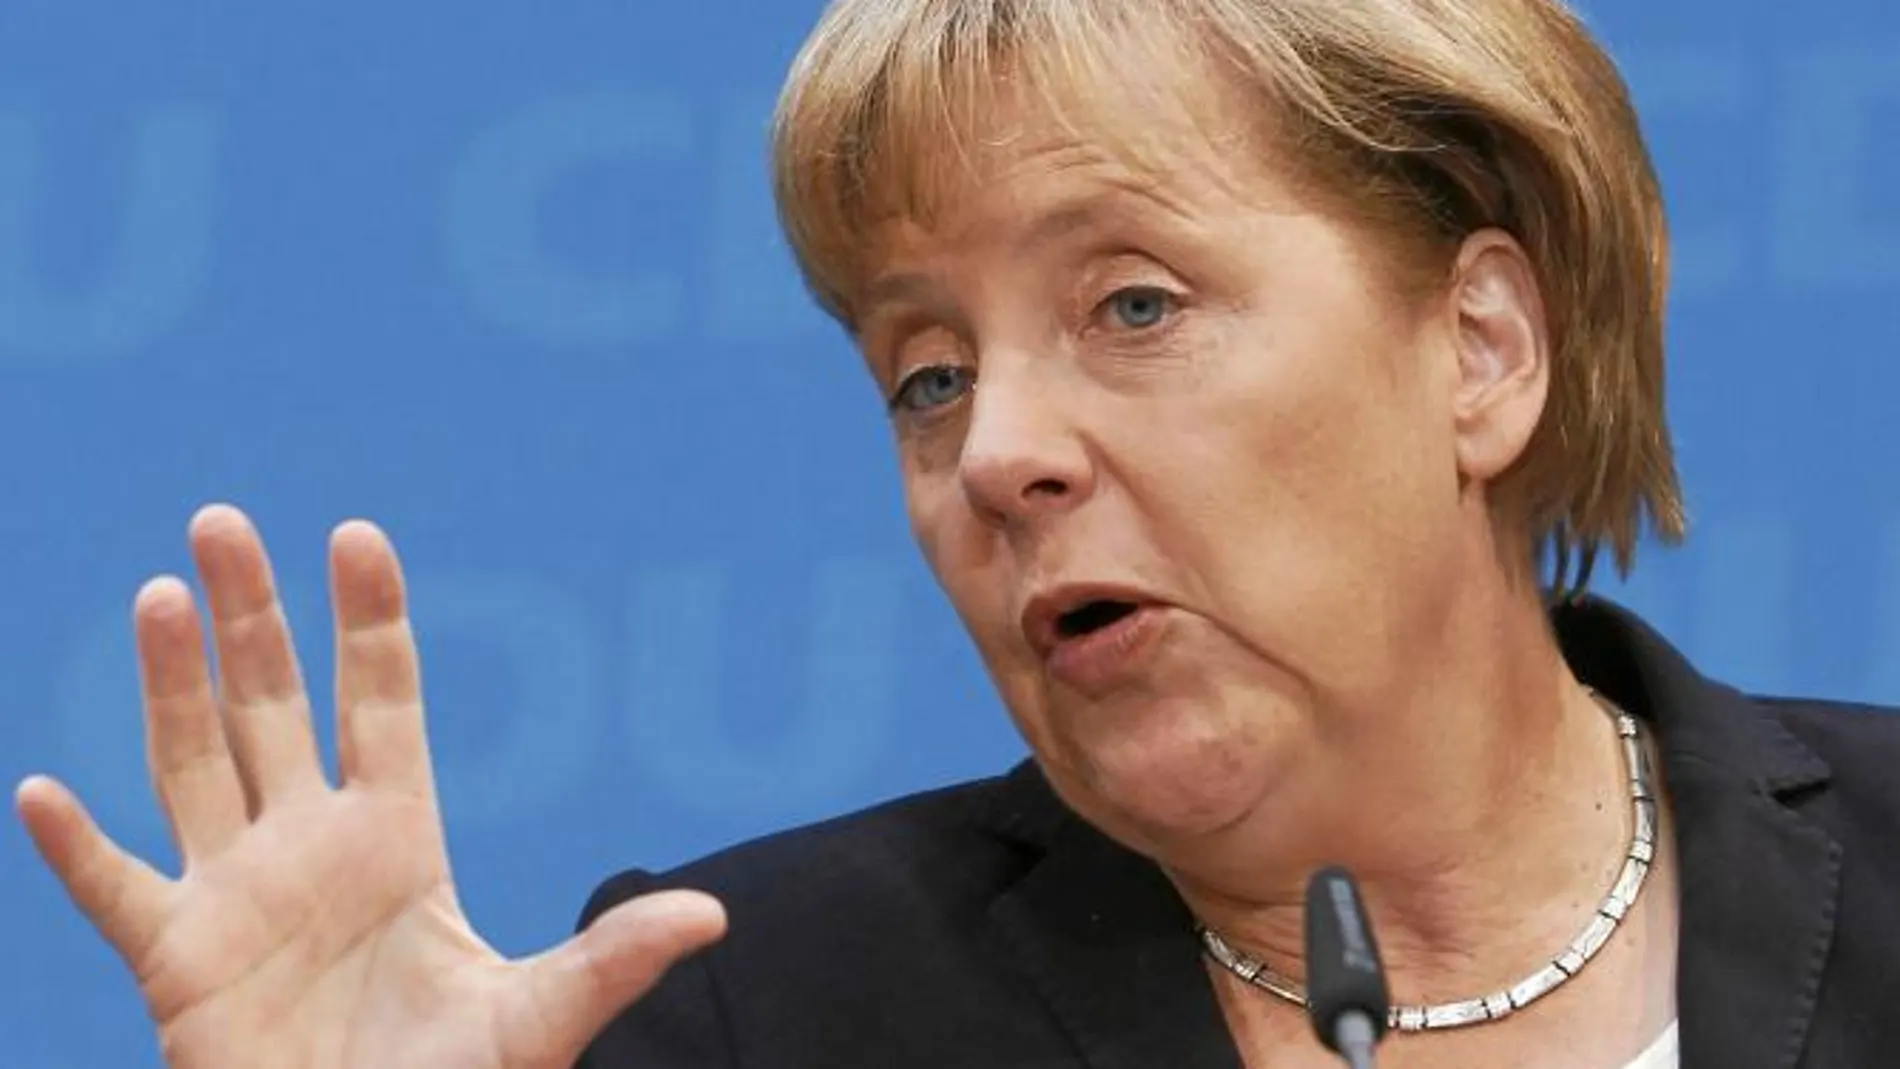 La canciller Angela Merkel rechaza que Grecia salga del euro, «sería peligroso»